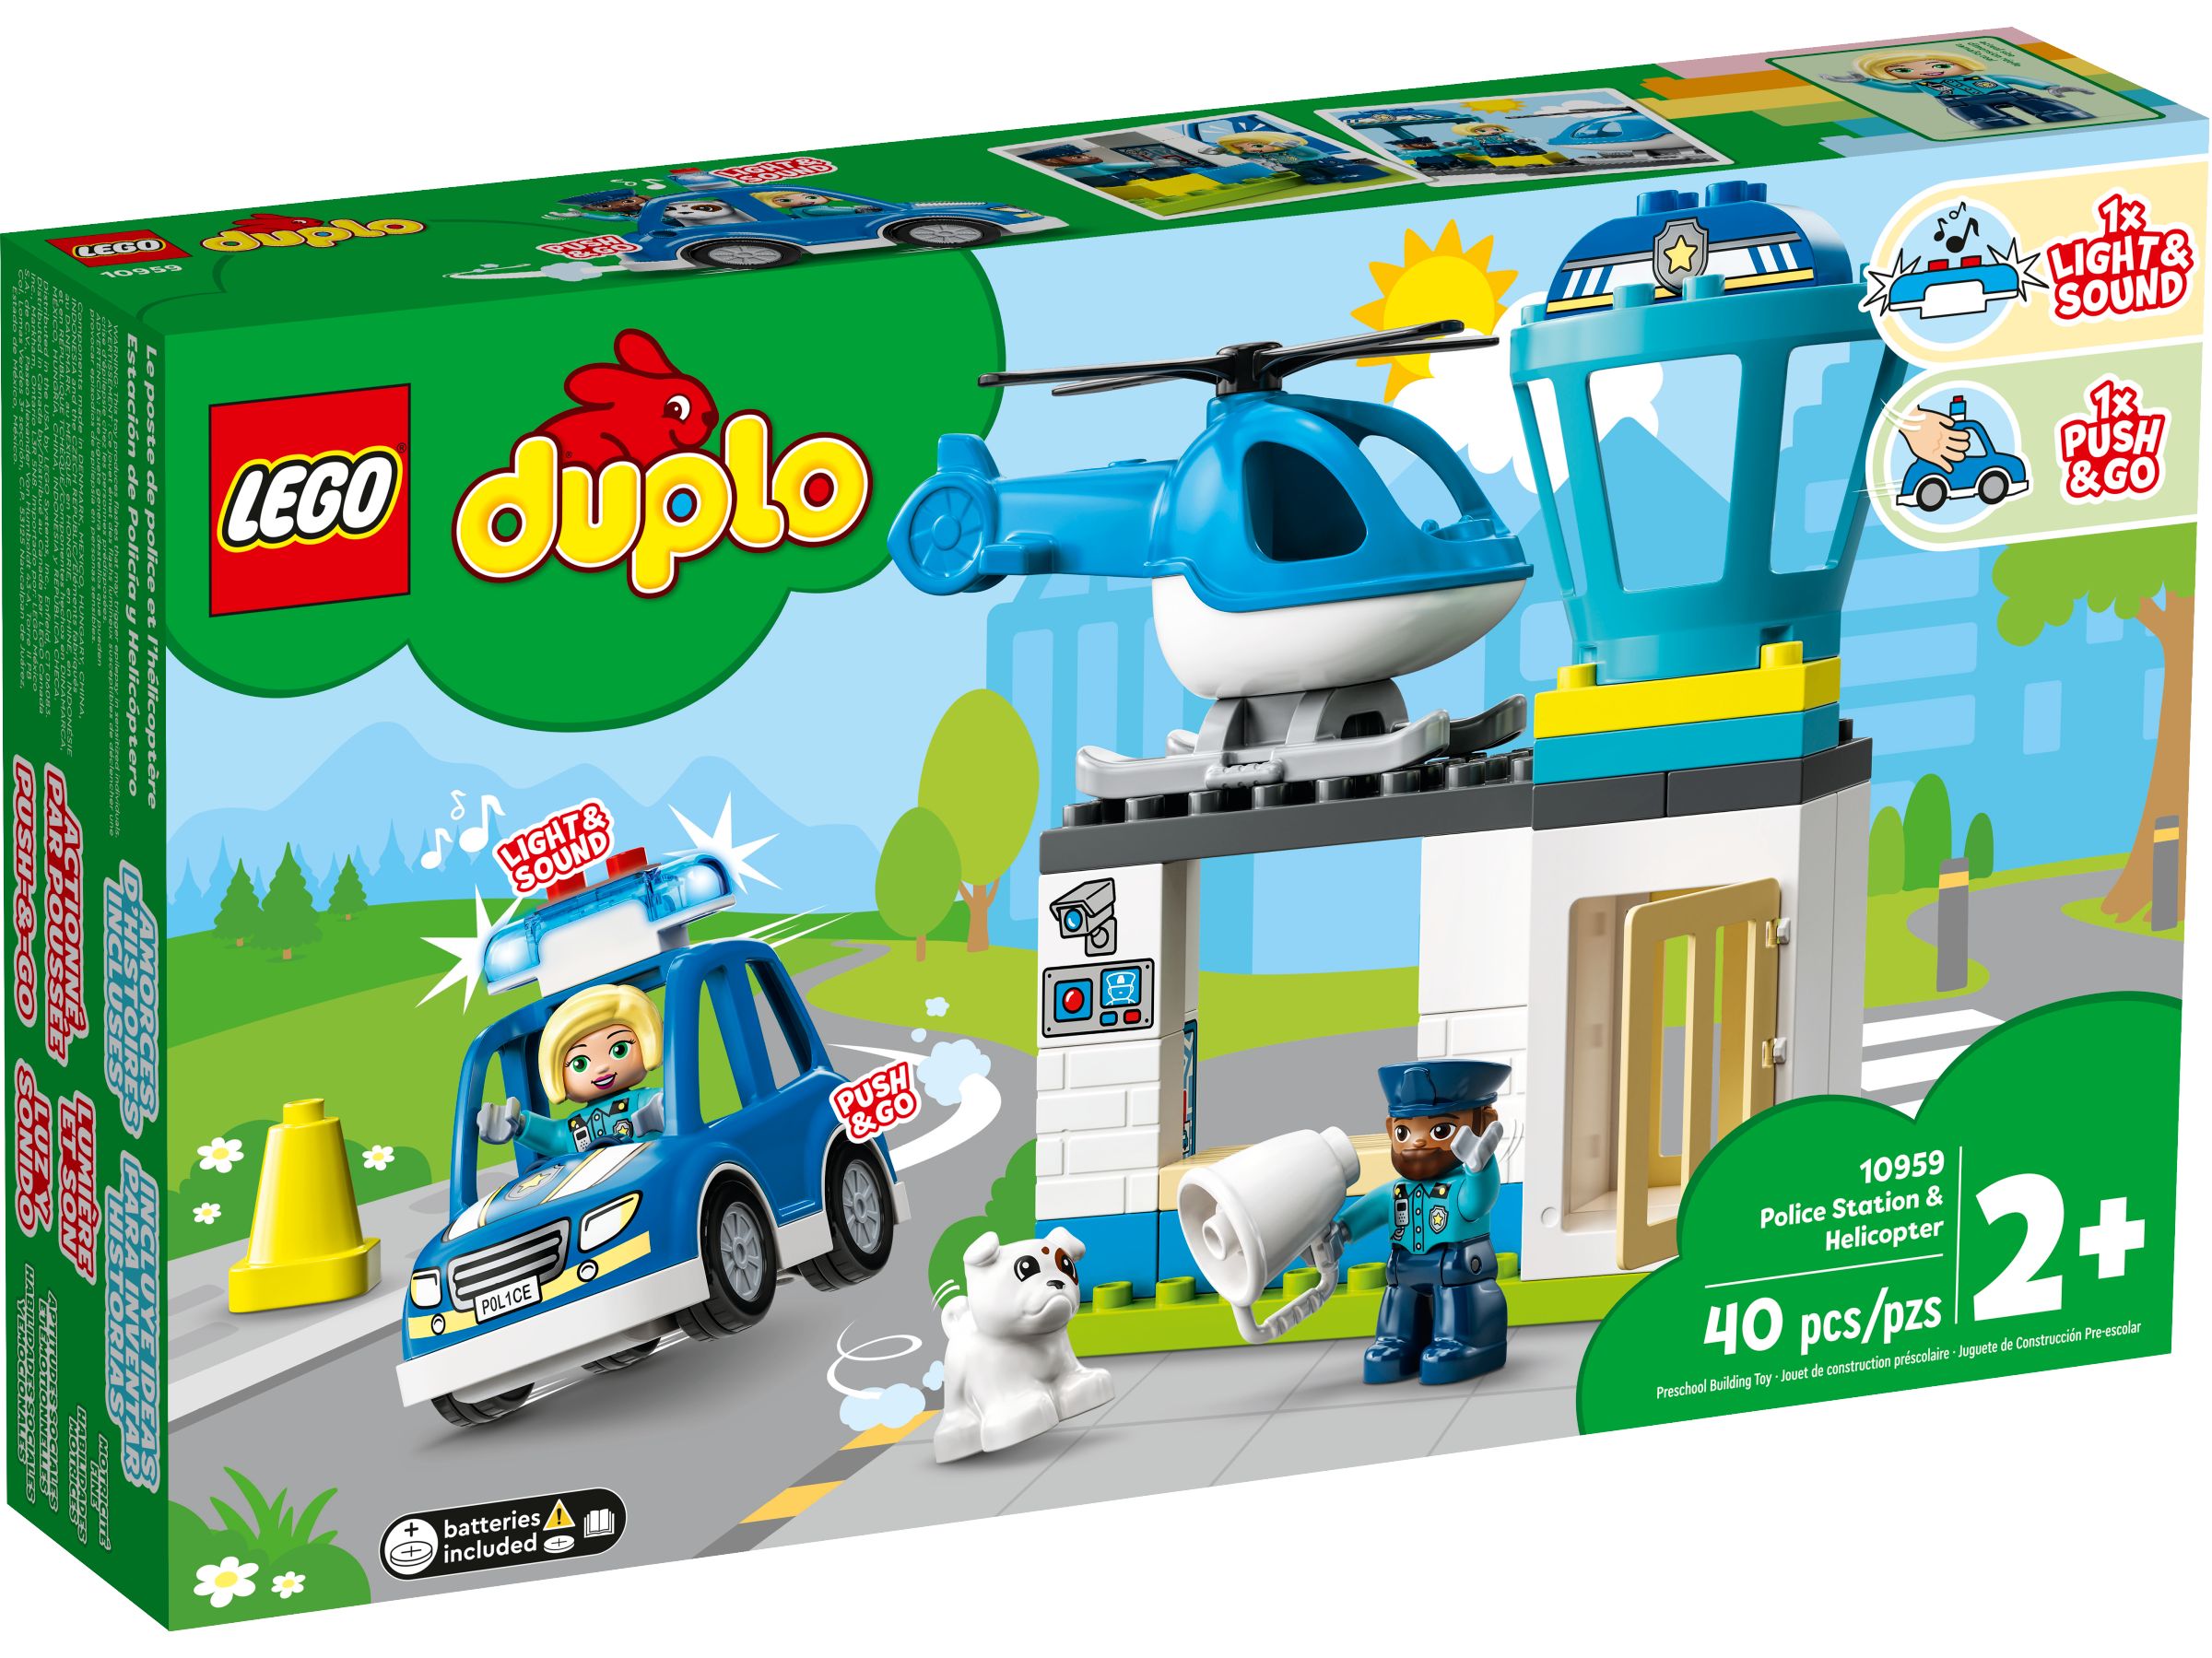 LEGO Duplo 10959 Polizeistation mit Hubschrauber LEGO_10959_alt1.jpg